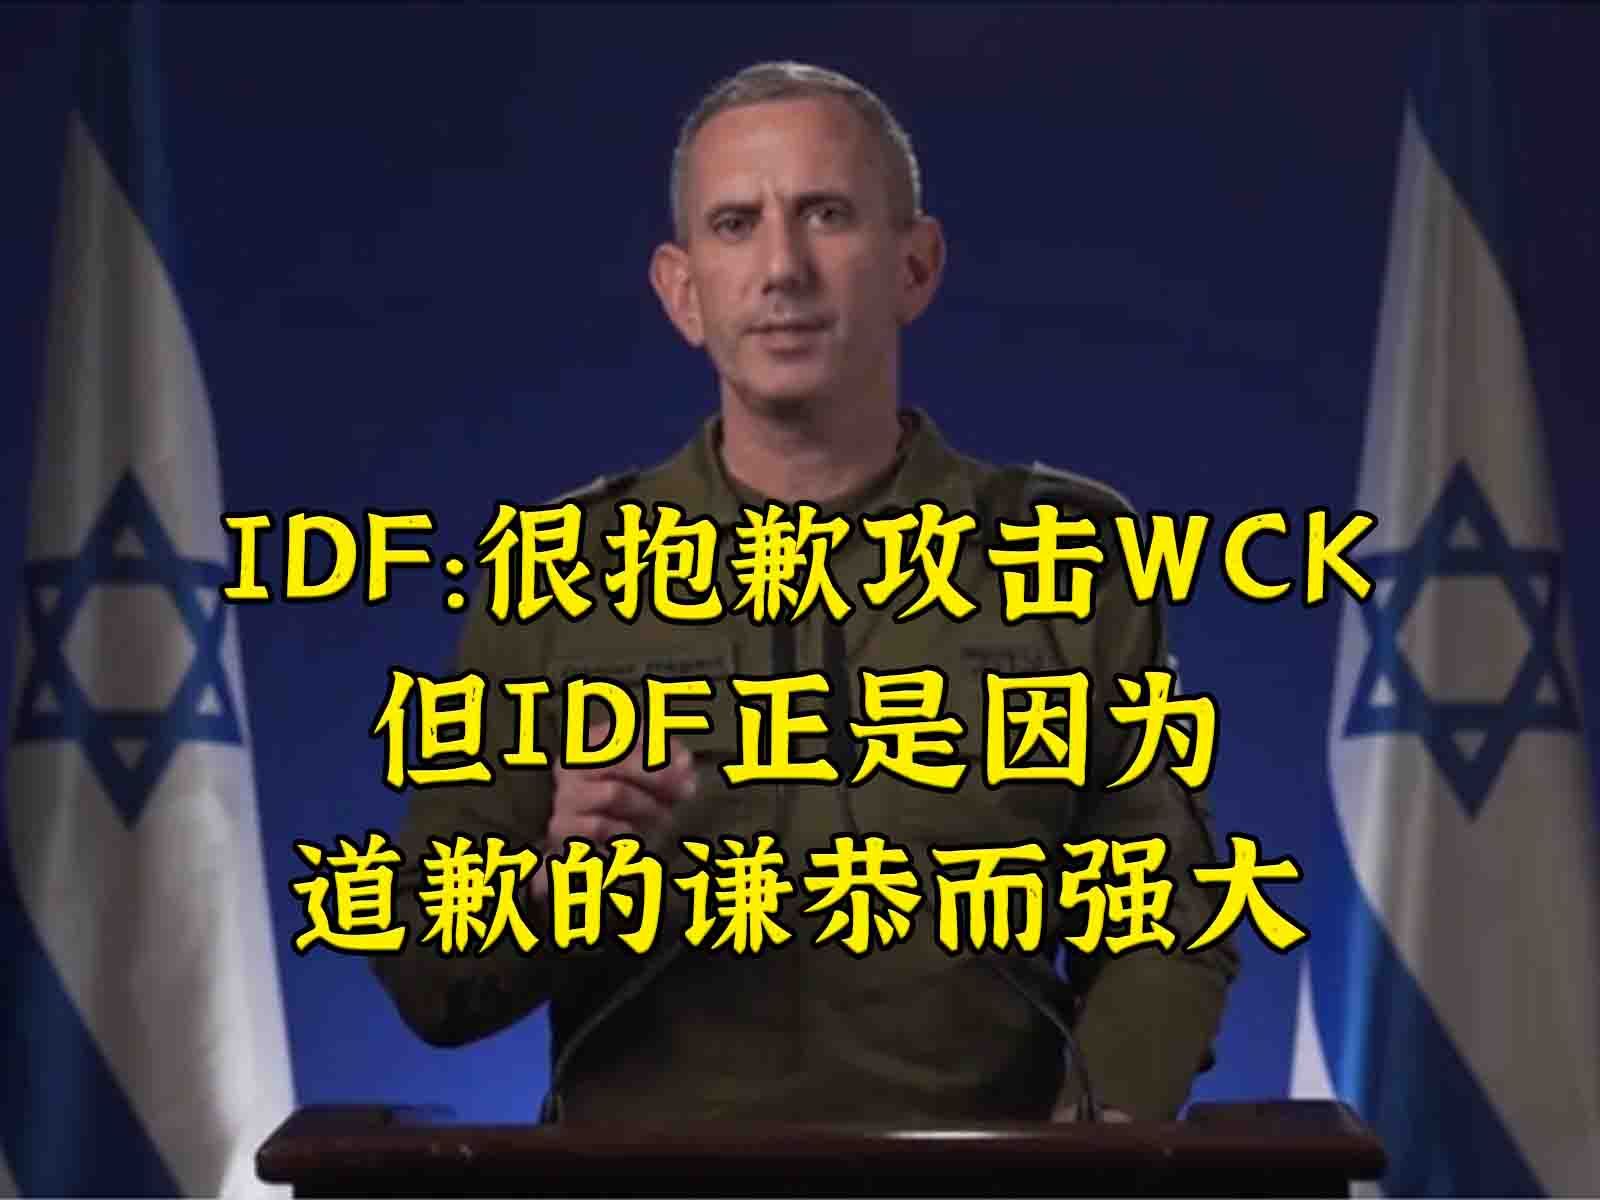 IDF：抱歉攻击WCK，但我的强大正因为道歉的谦恭